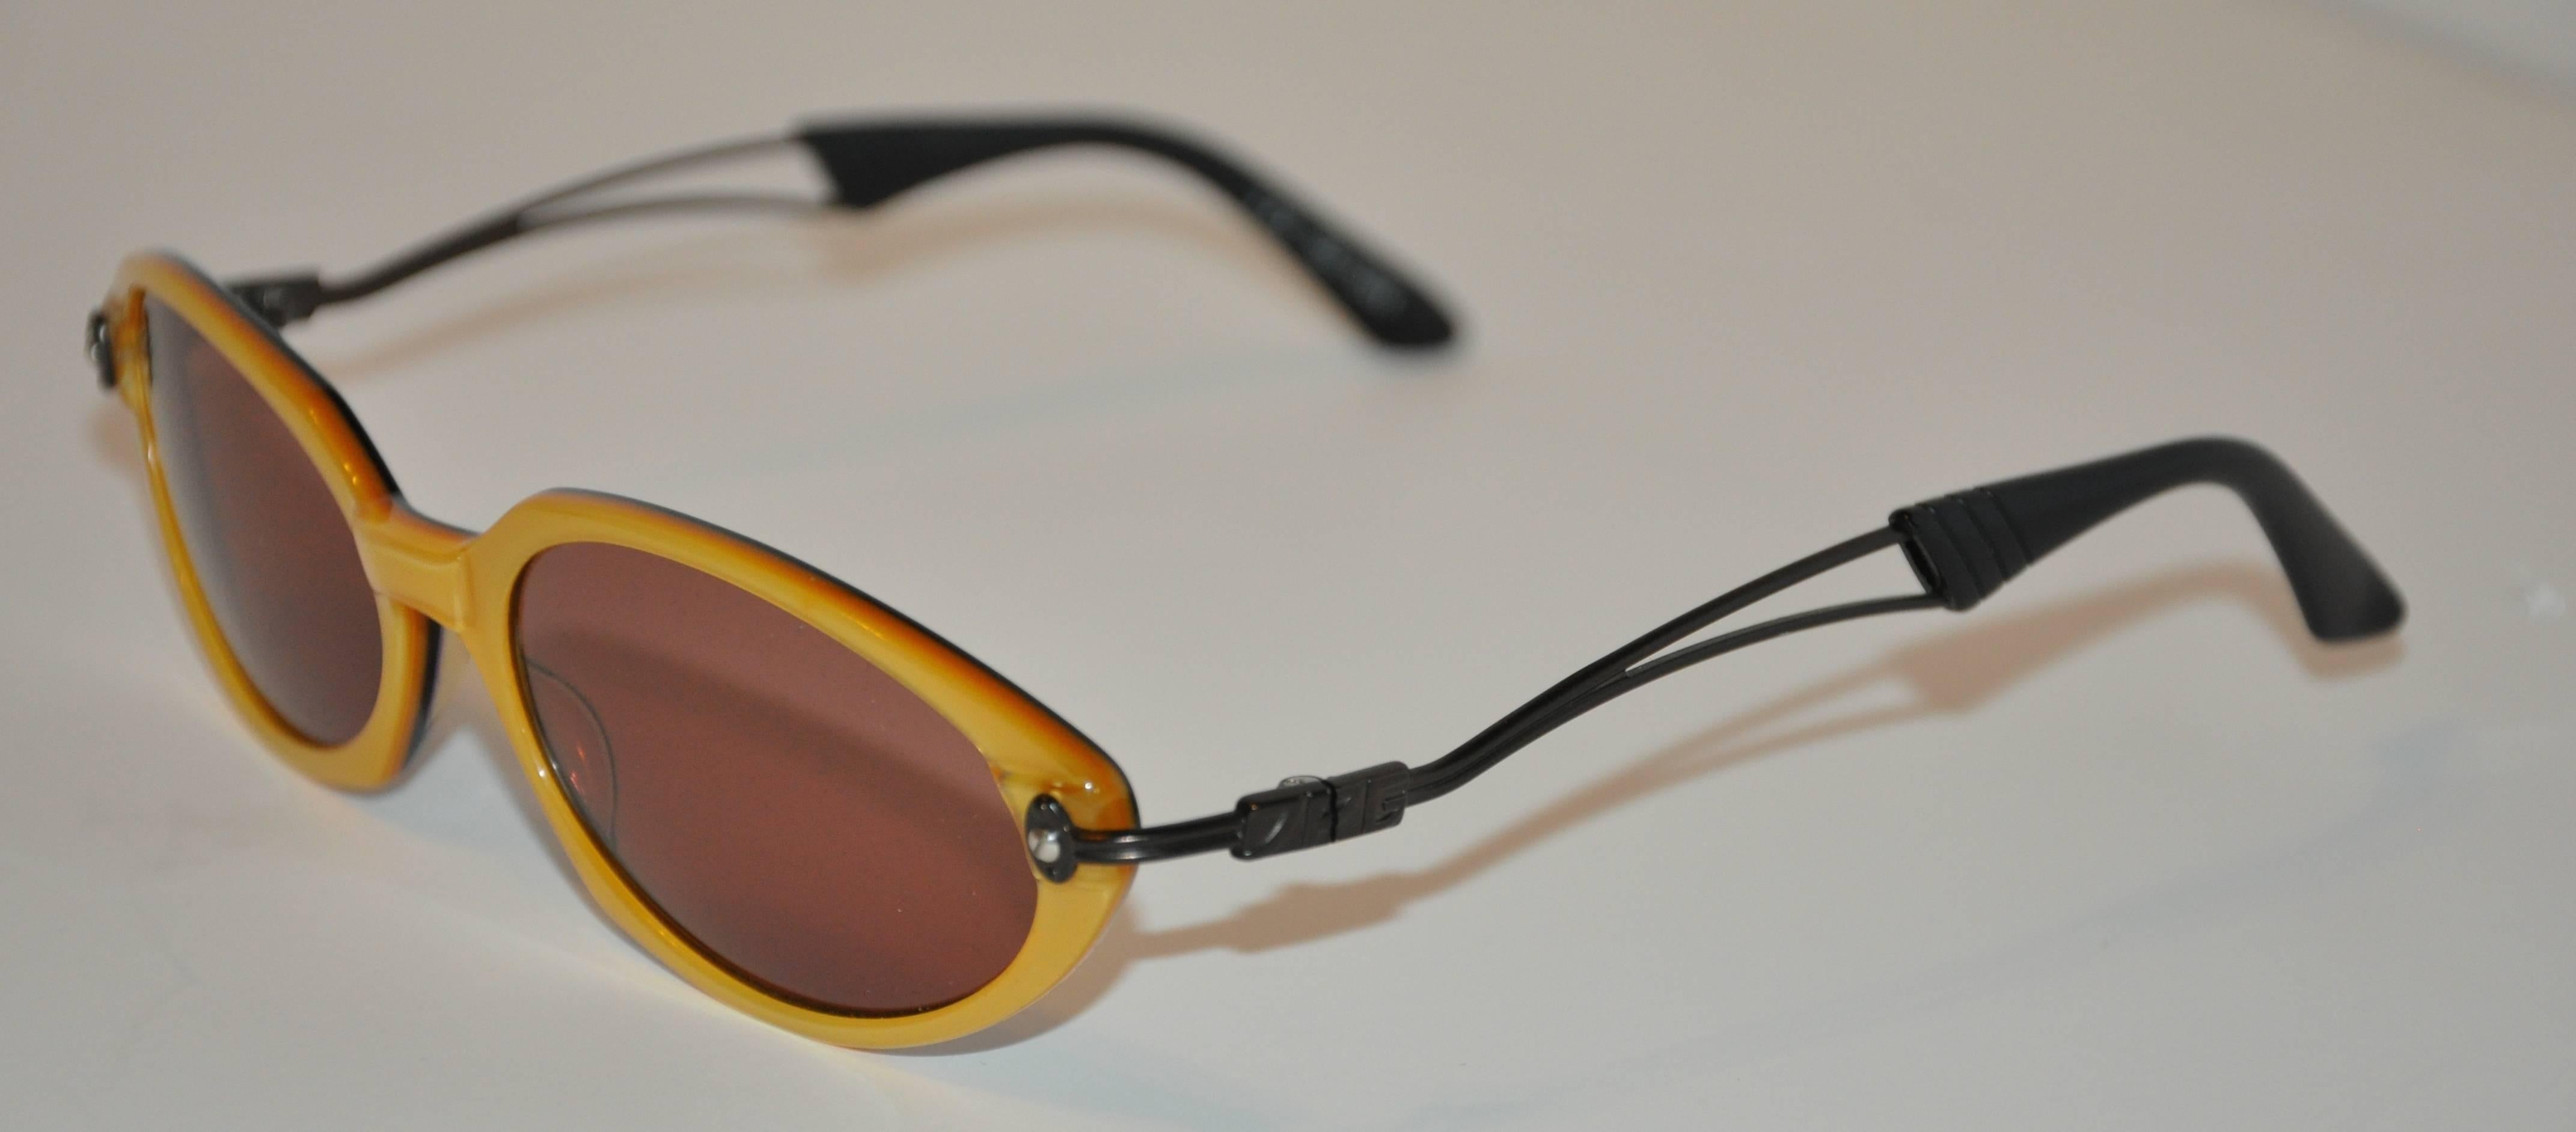         Les lunettes de soleil Jean Paul Gaultier, merveilleusement détaillées en lucite dorée, sont finies avec un intérieur en lucite noire. Les bras sont en métal noir avec des extrémités en lucite noire. La longueur sur le devant mesure 5 3/4